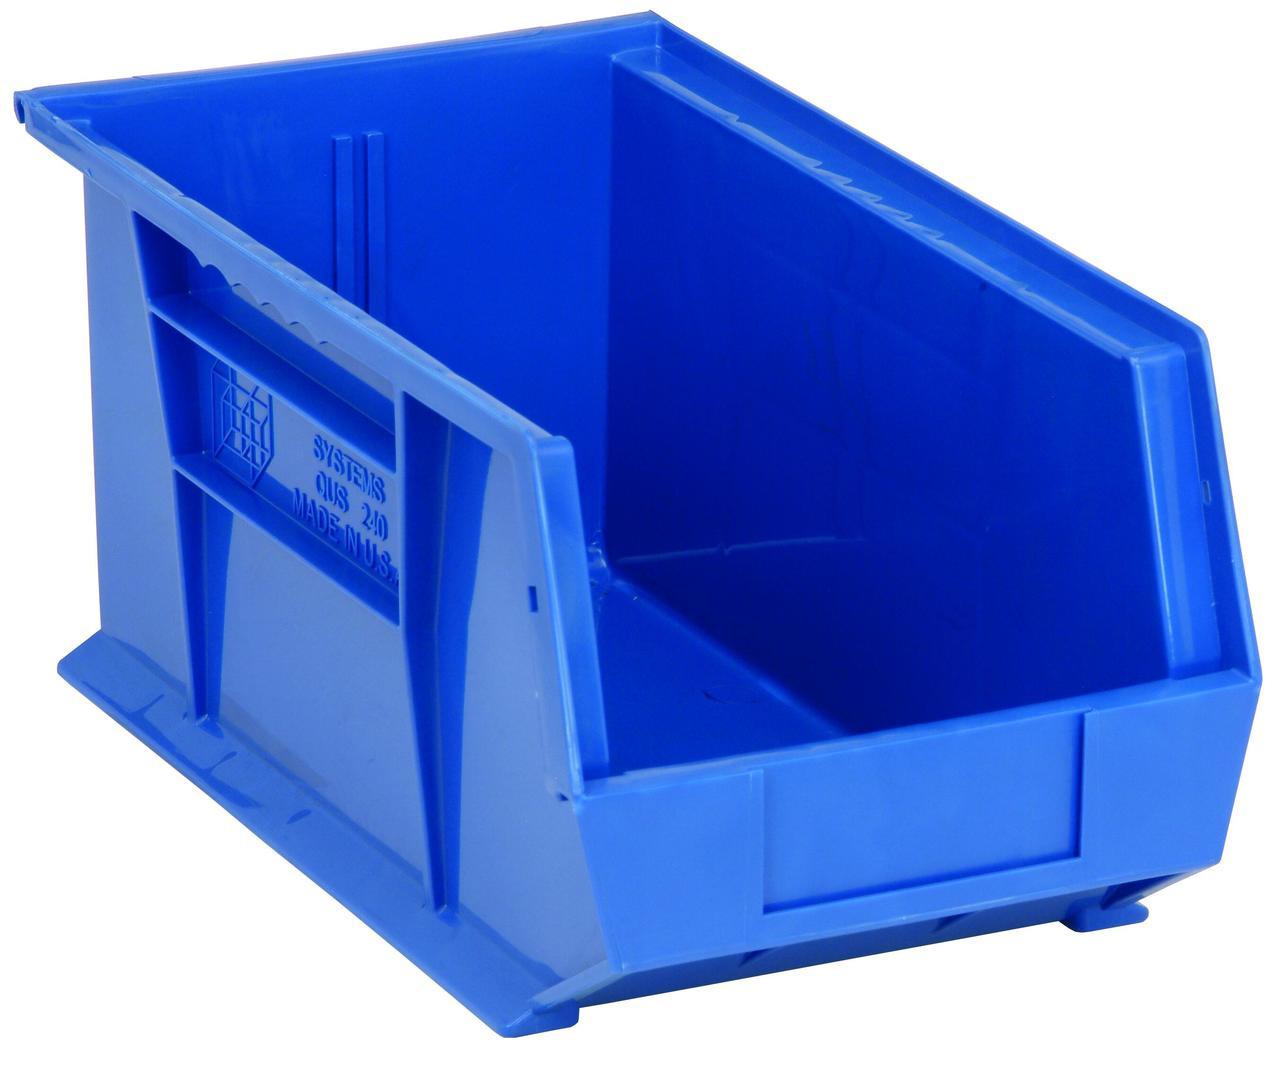 PLASTIC BINS & BIN RACKS  Plastic storage bins, Storage bins, Plastic  container storage